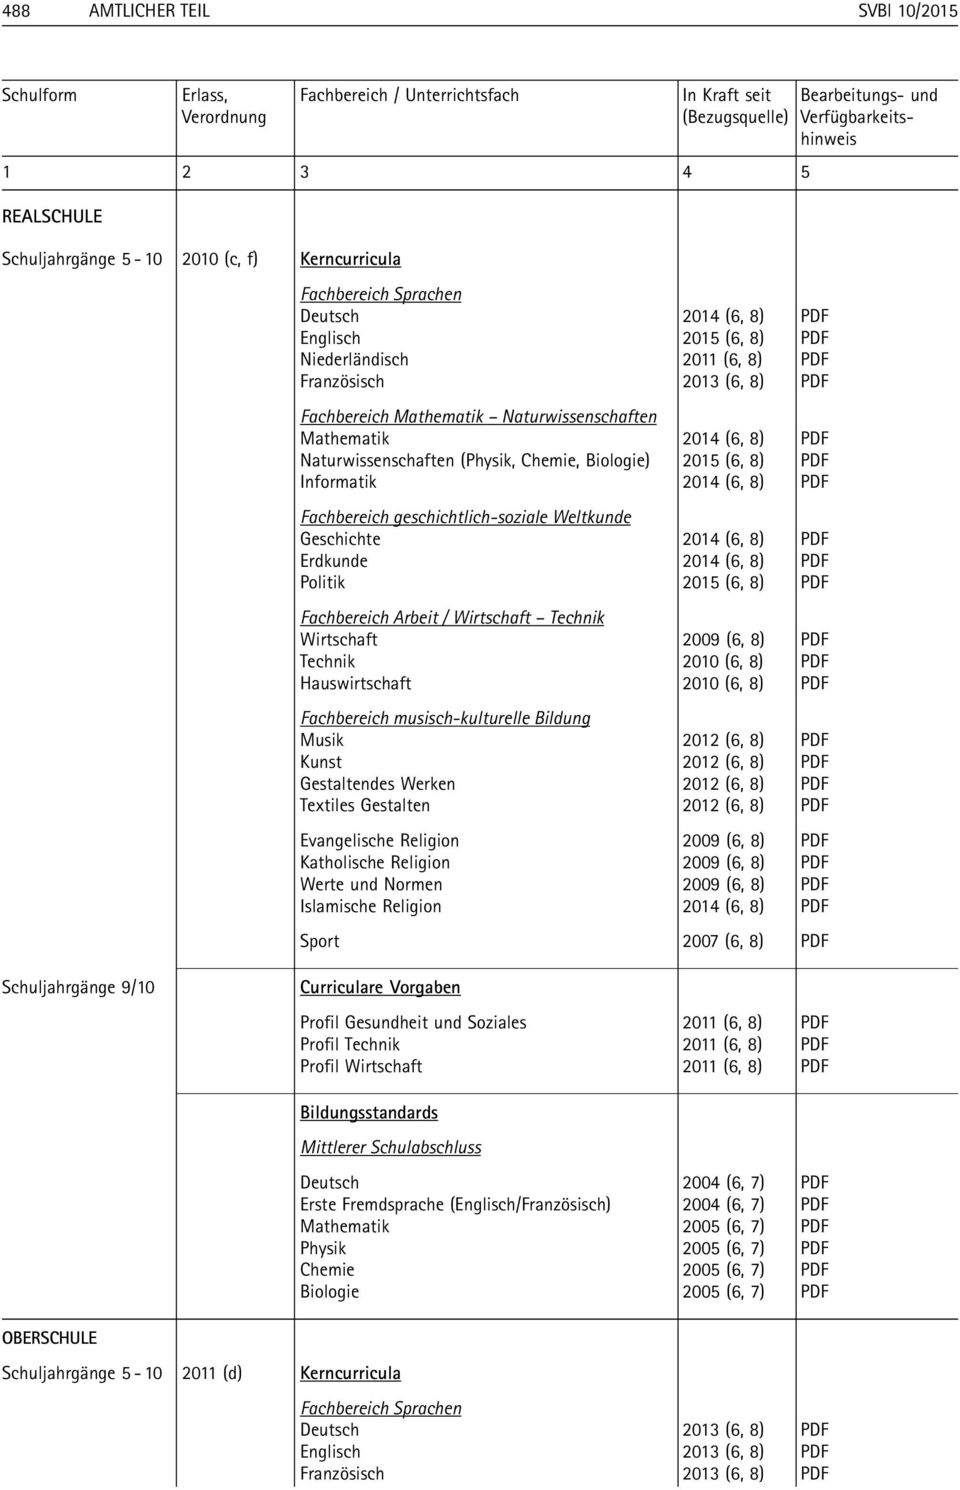 Naturwissenschaften Mathematik 2014 (6, 8) PDF Naturwissenschaften (Physik, Chemie, Biologie) 2015 (6, 8) PDF Informatik 2014 (6, 8) PDF Fachbereich geschichtlich-soziale Weltkunde Geschichte 2014